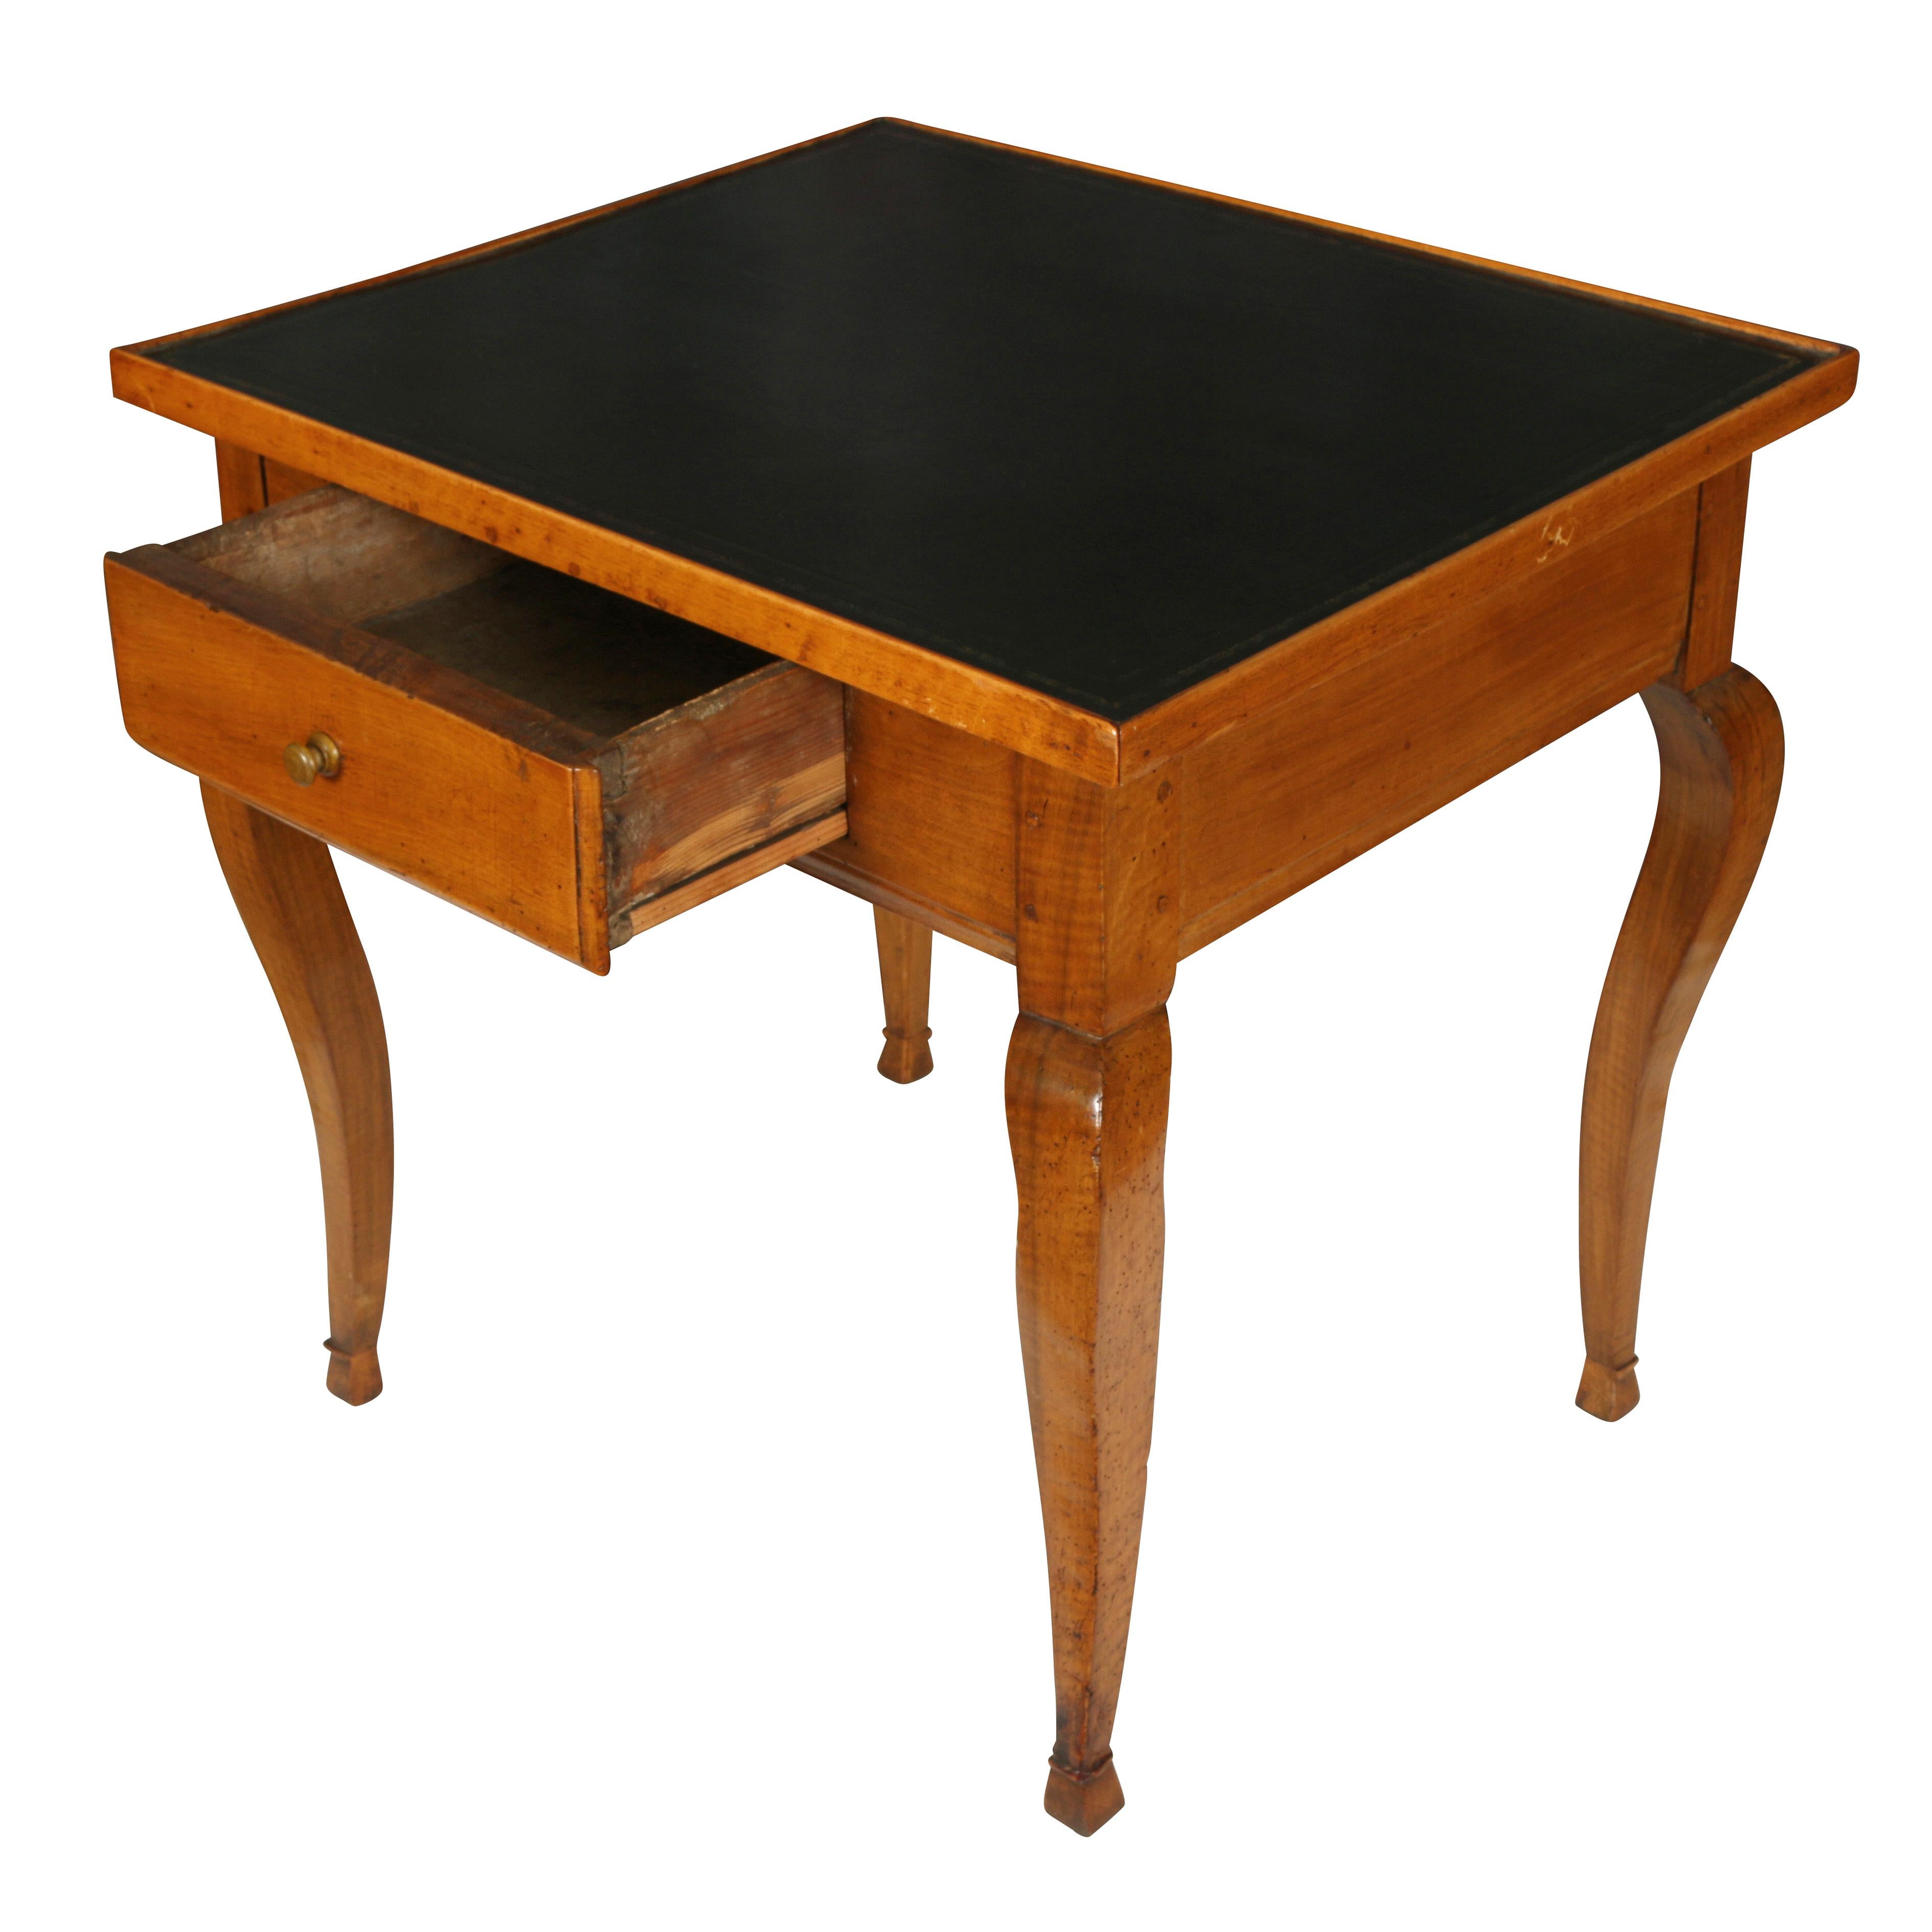 Magnifique table à écrire française en noyer du XIXe siècle, avec un tiroir et un plateau en cuir noir.  La table a développé une patine riche et chaleureuse et sa taille en fait un parfait petit bureau ou une table d'appoint.